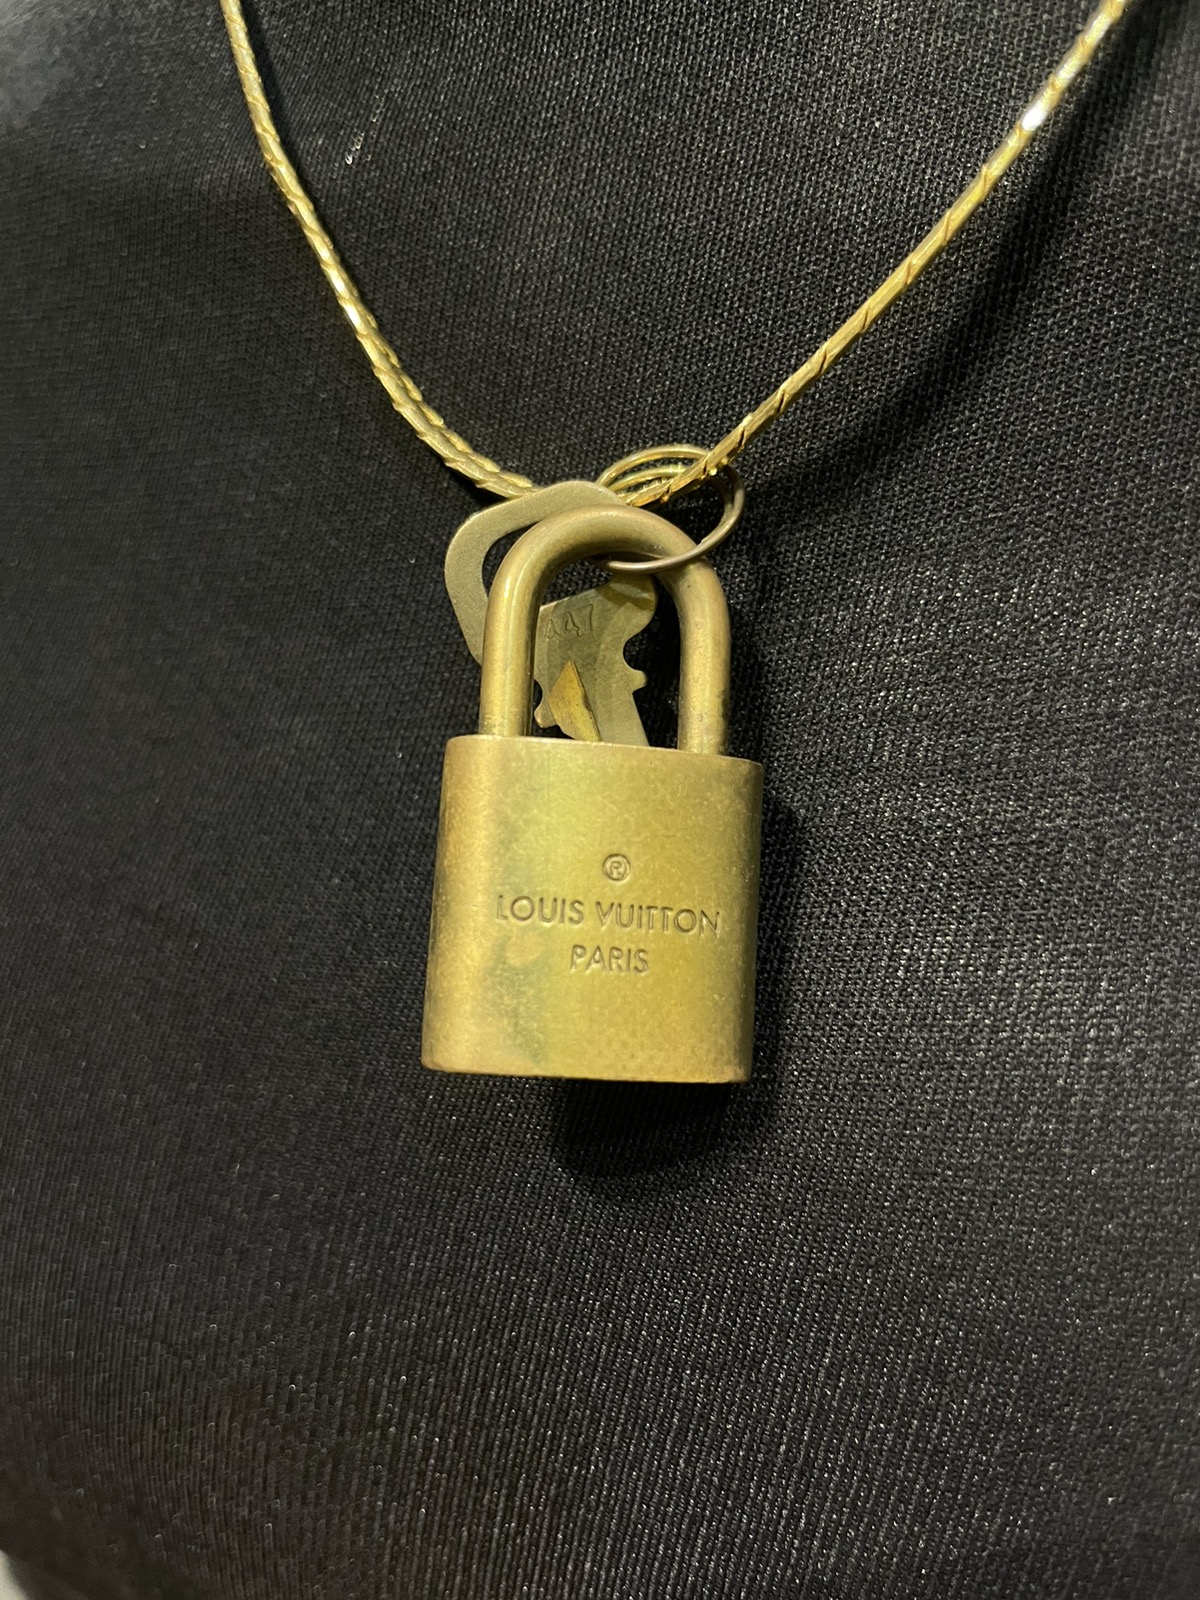 Louis Vuitton /key / Gold Necklace - 7